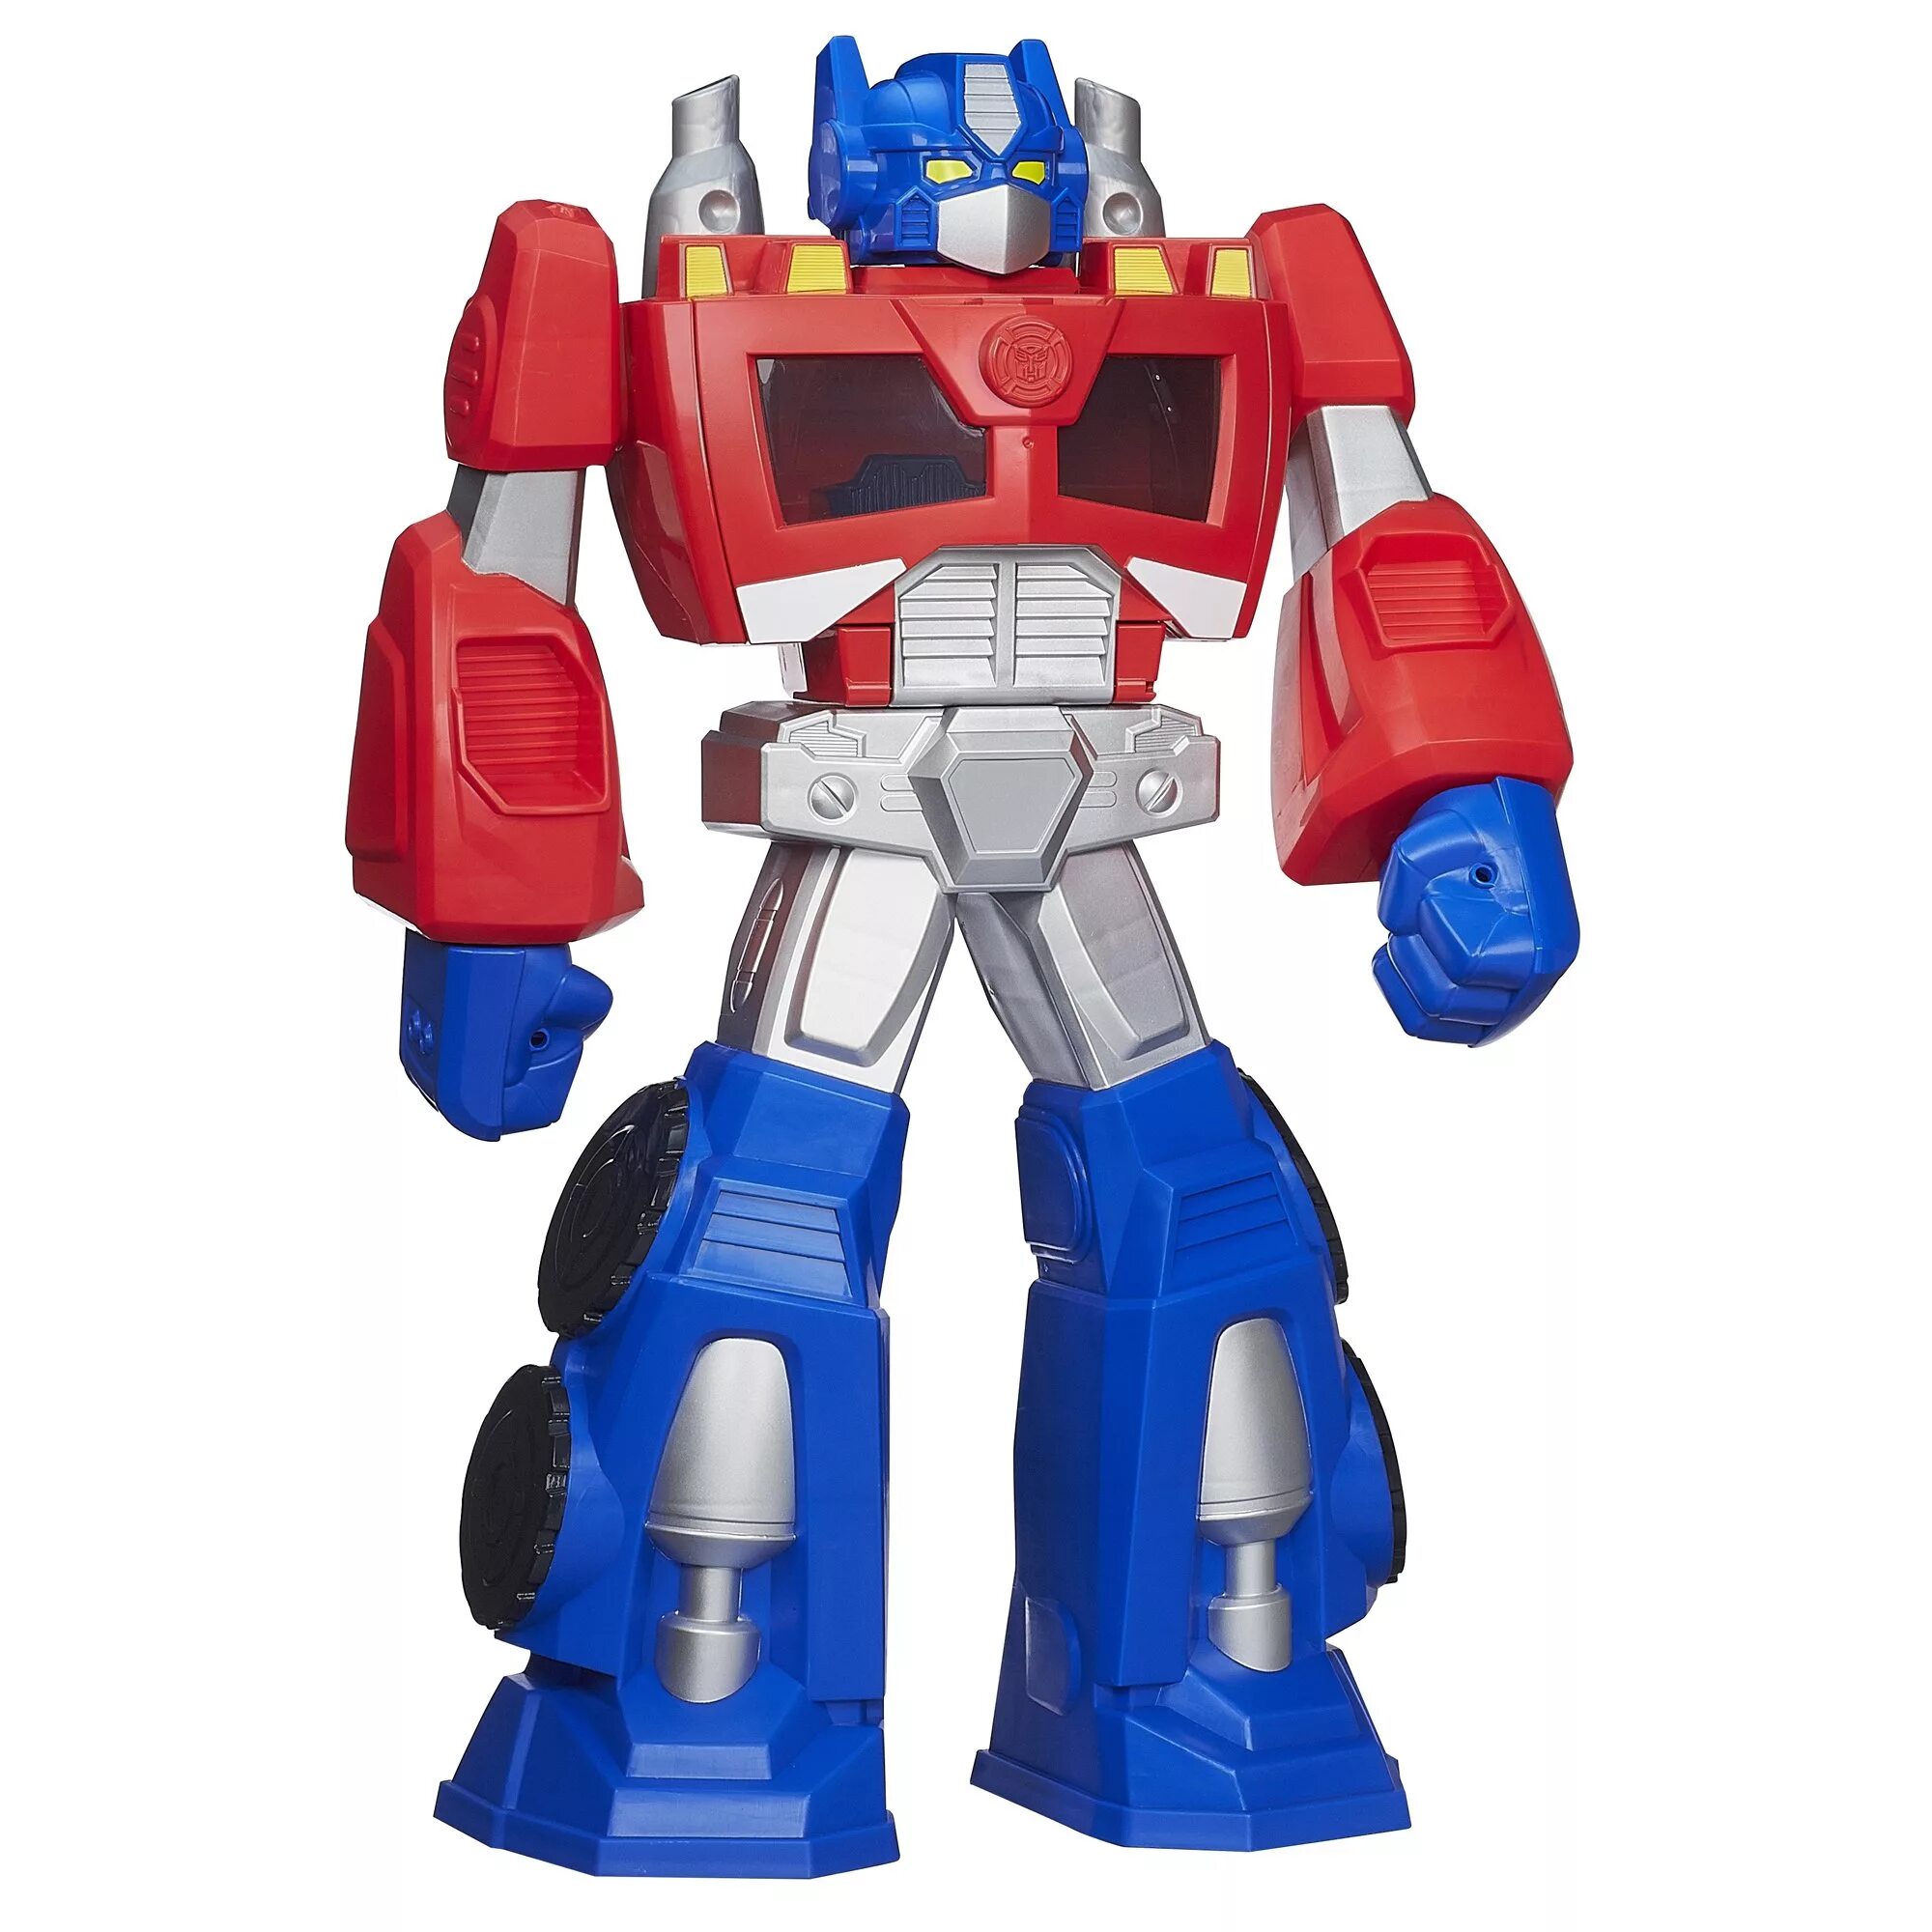 Робот оптимус. Трансформеры игрушки для мальчиков Оптимус Прайм. Transformers Rescue bots Optimus Prime. Игрушек Тобот трансформеры Оптимус Прайм. Трансформер хайтайт.